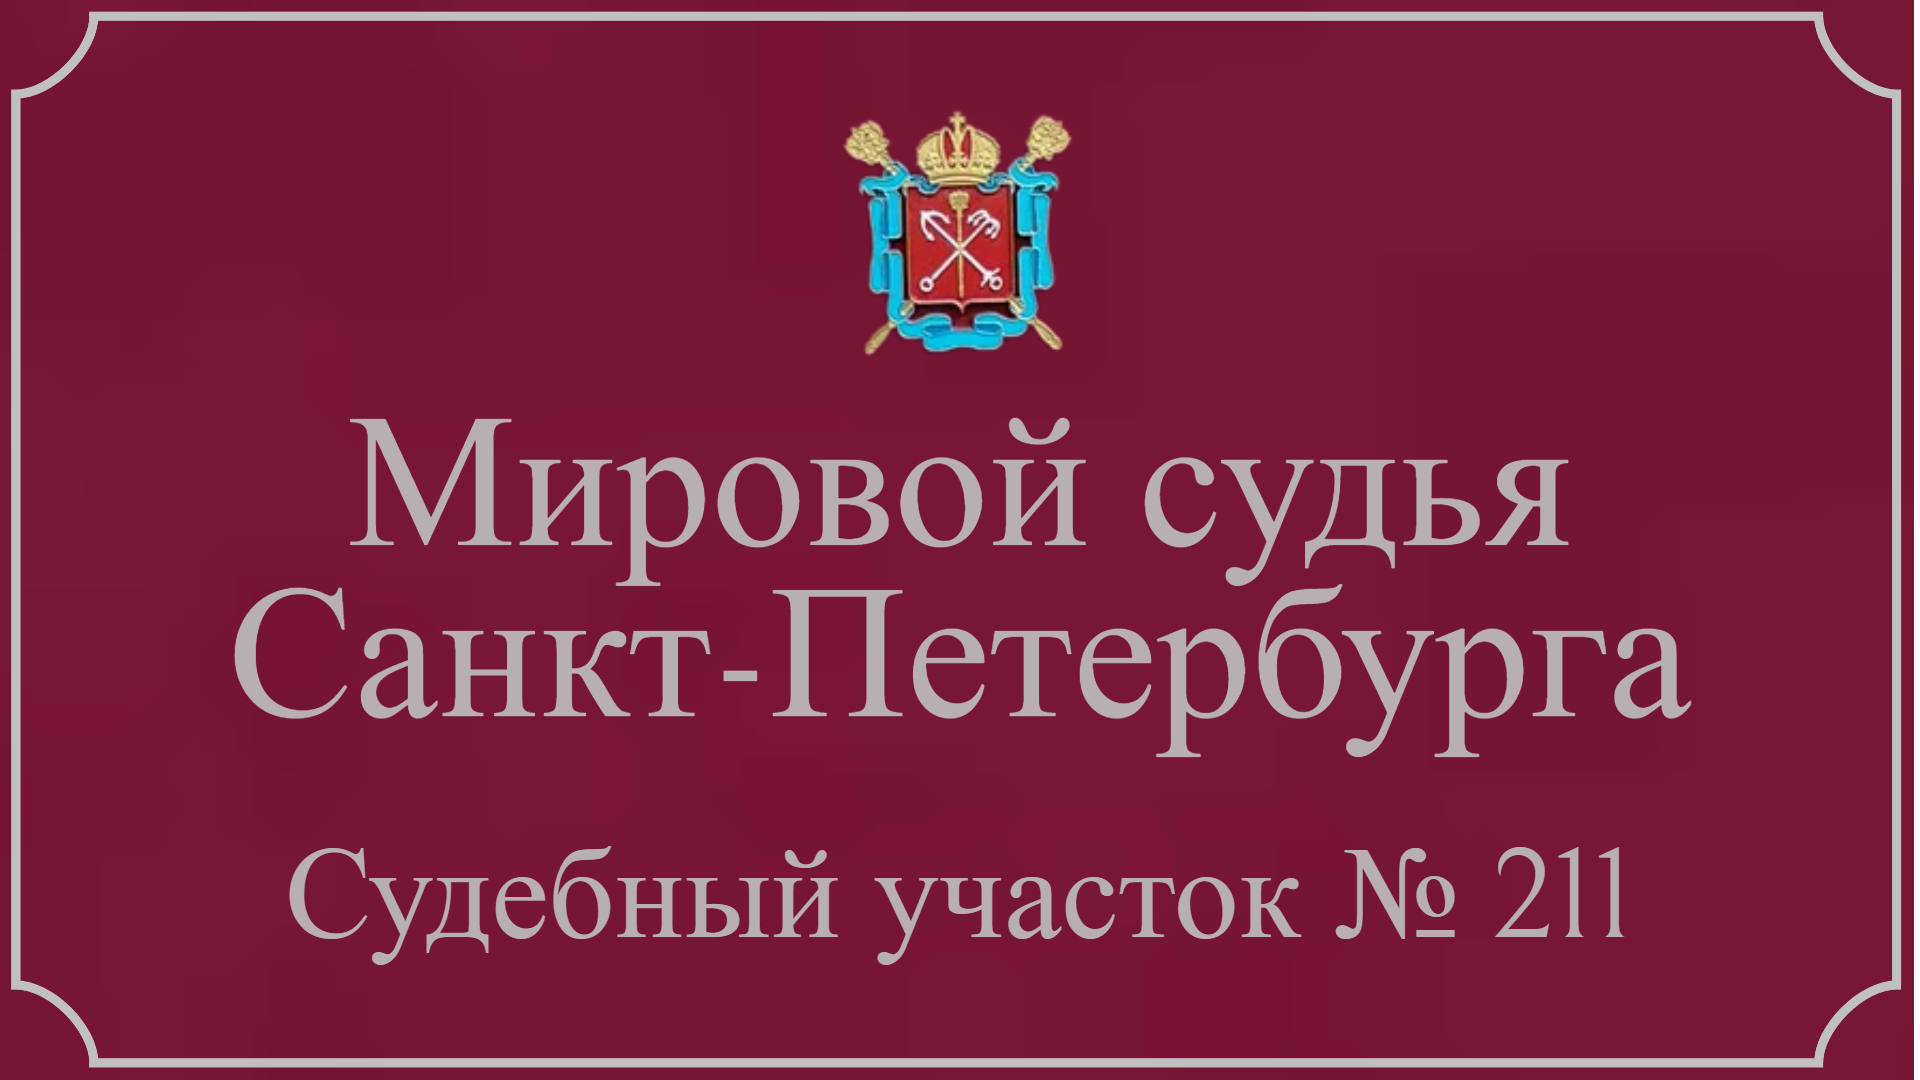 Информация по 211 судебному участку в Санкт-Петербурге.